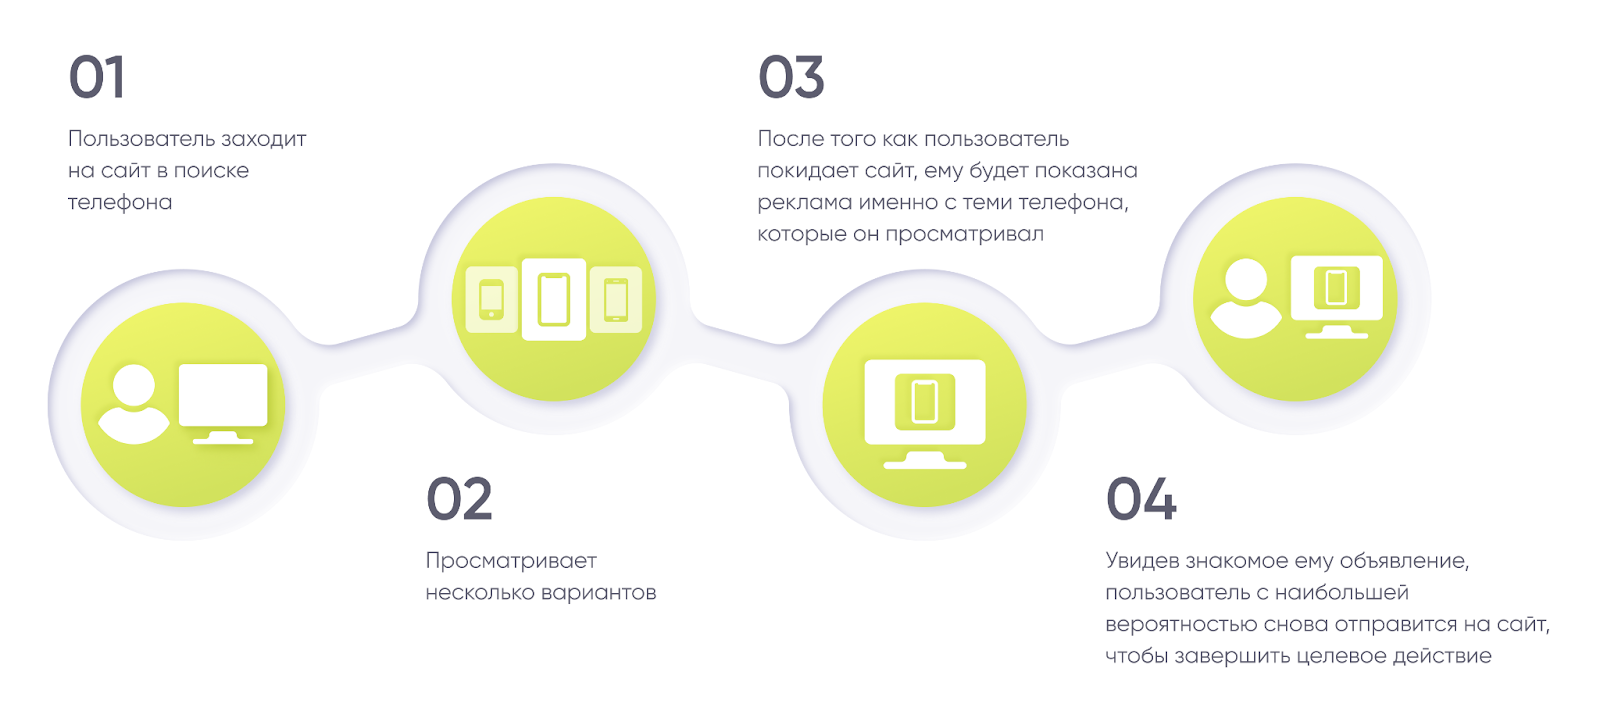 Импортозамещение в программатике: как сейчас настроить динамический ремаркетинг в России